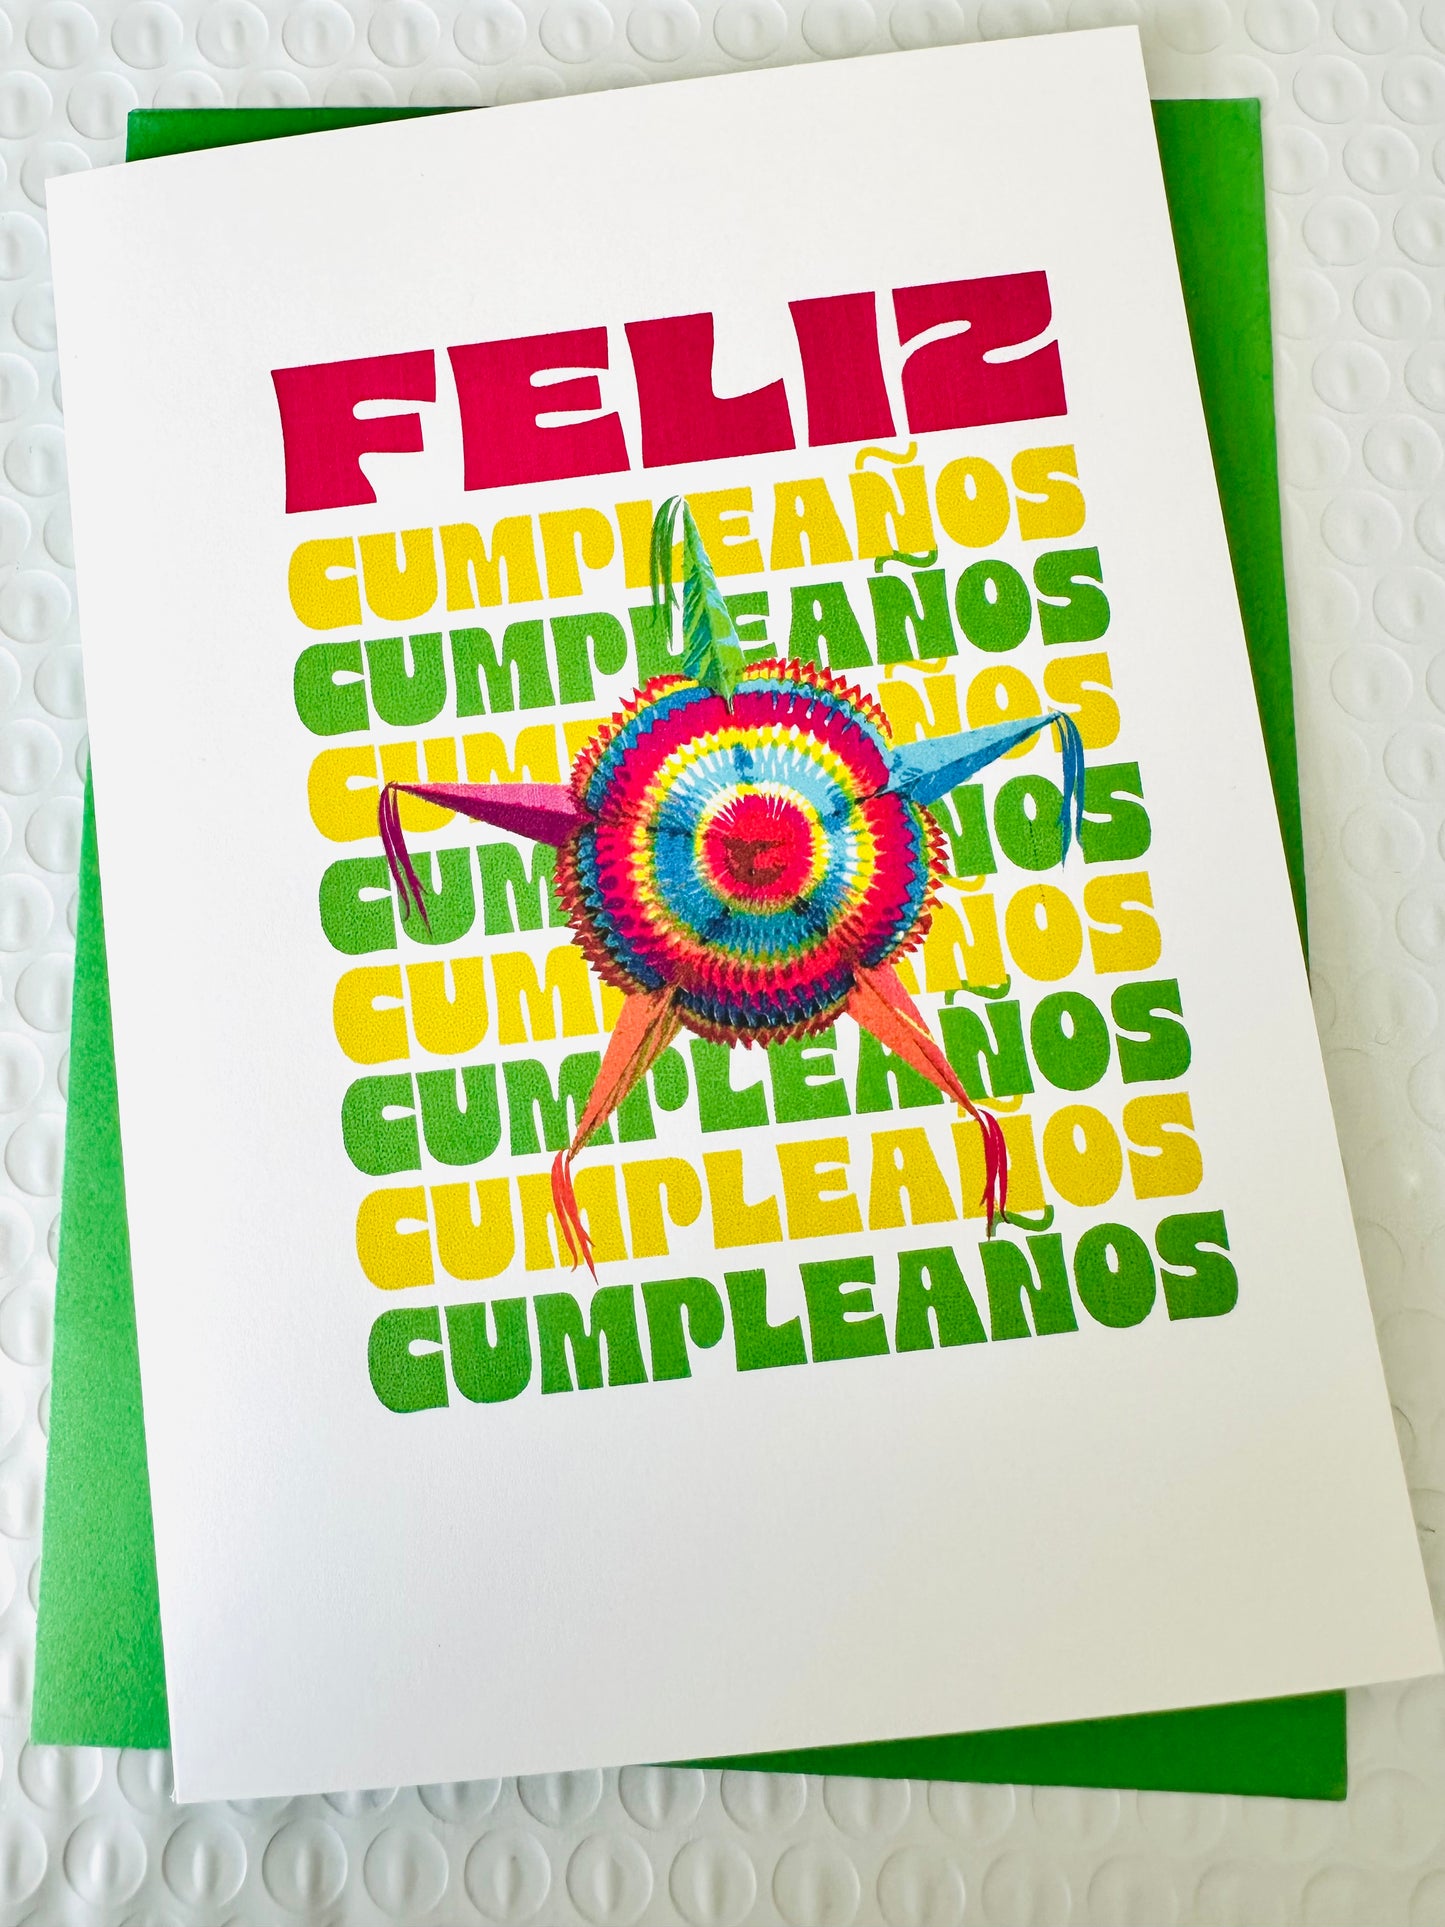 Happy Birthday & Feliz Cumpleanos! Festive star piñata greeting card 5x7 blank inside